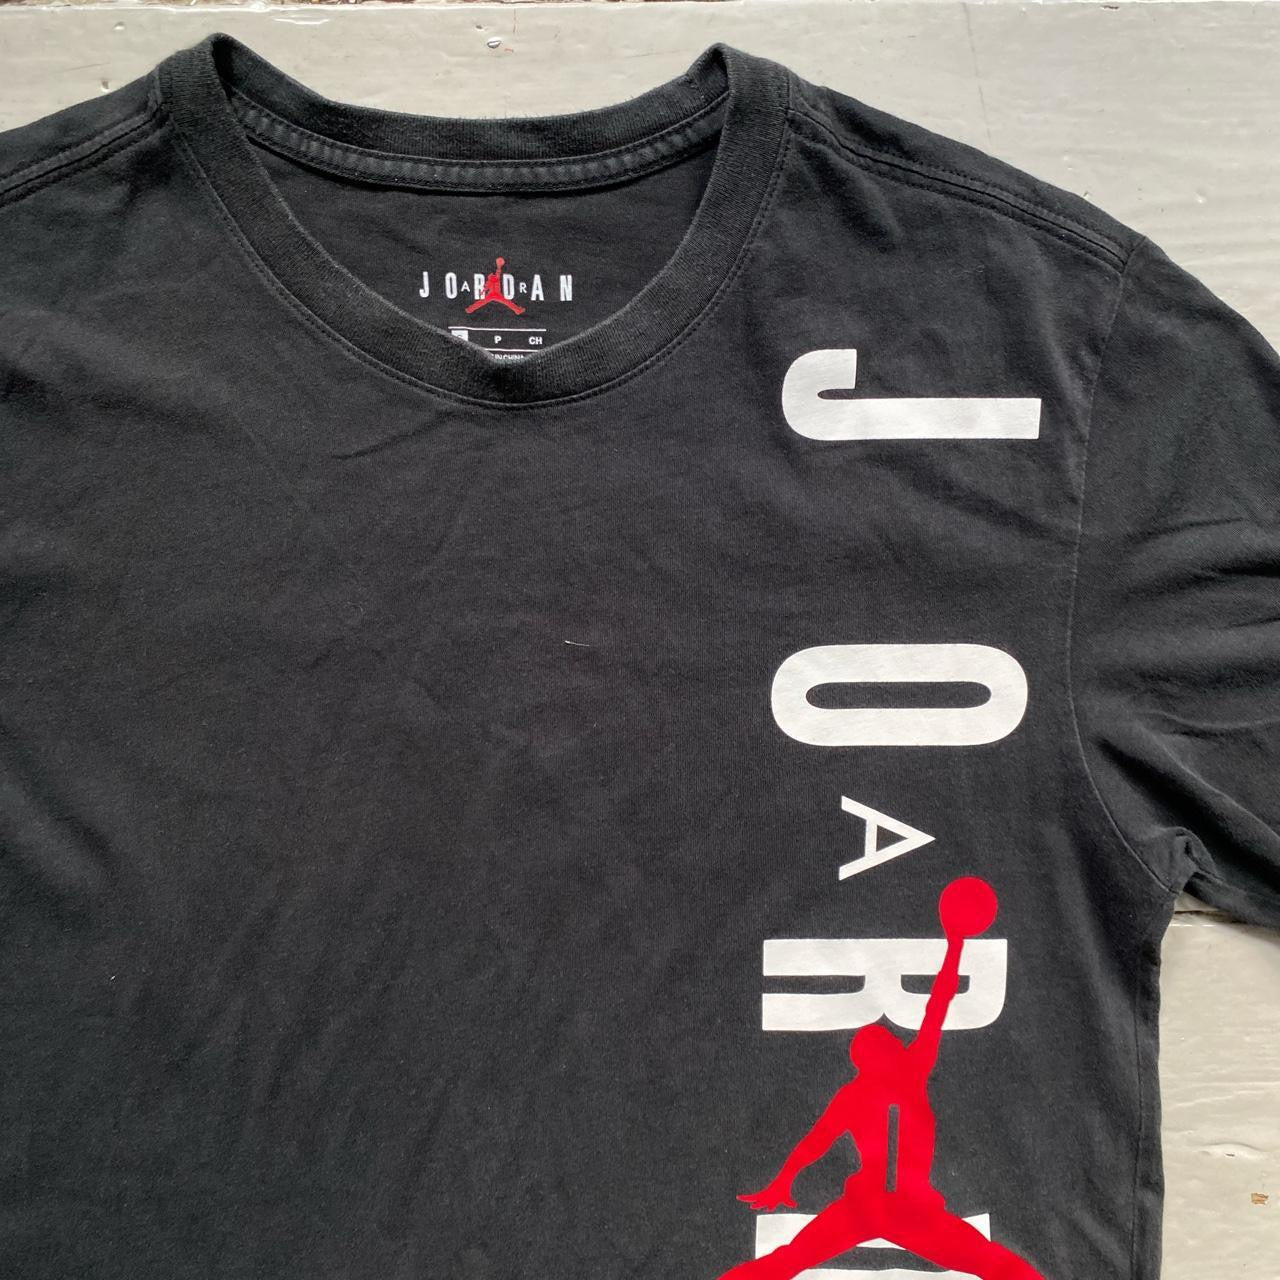 Air Jordan Black T Shirt (Small)